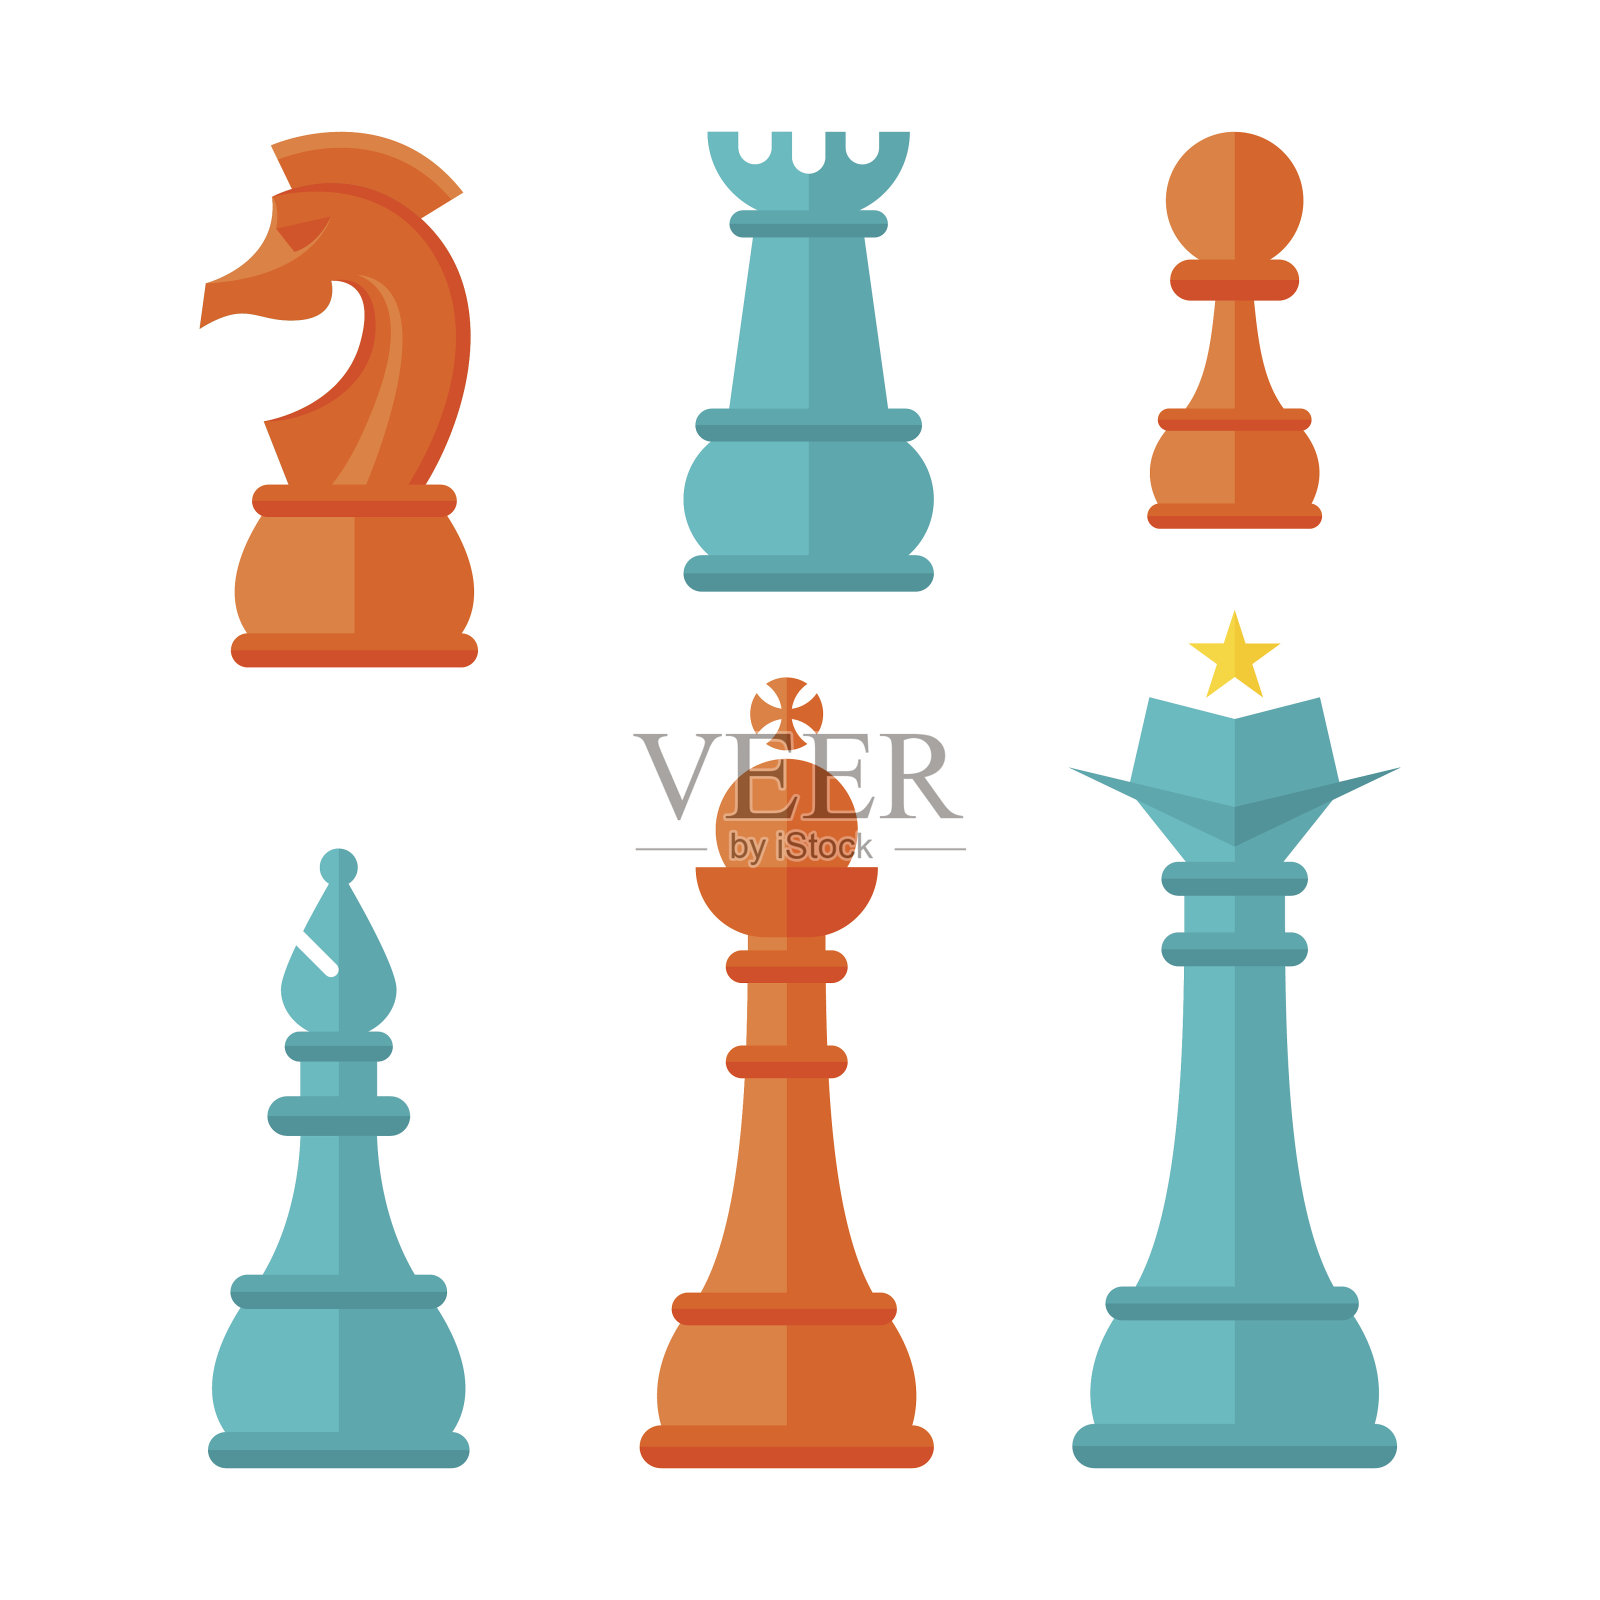 平面设计象棋单位插画图片素材